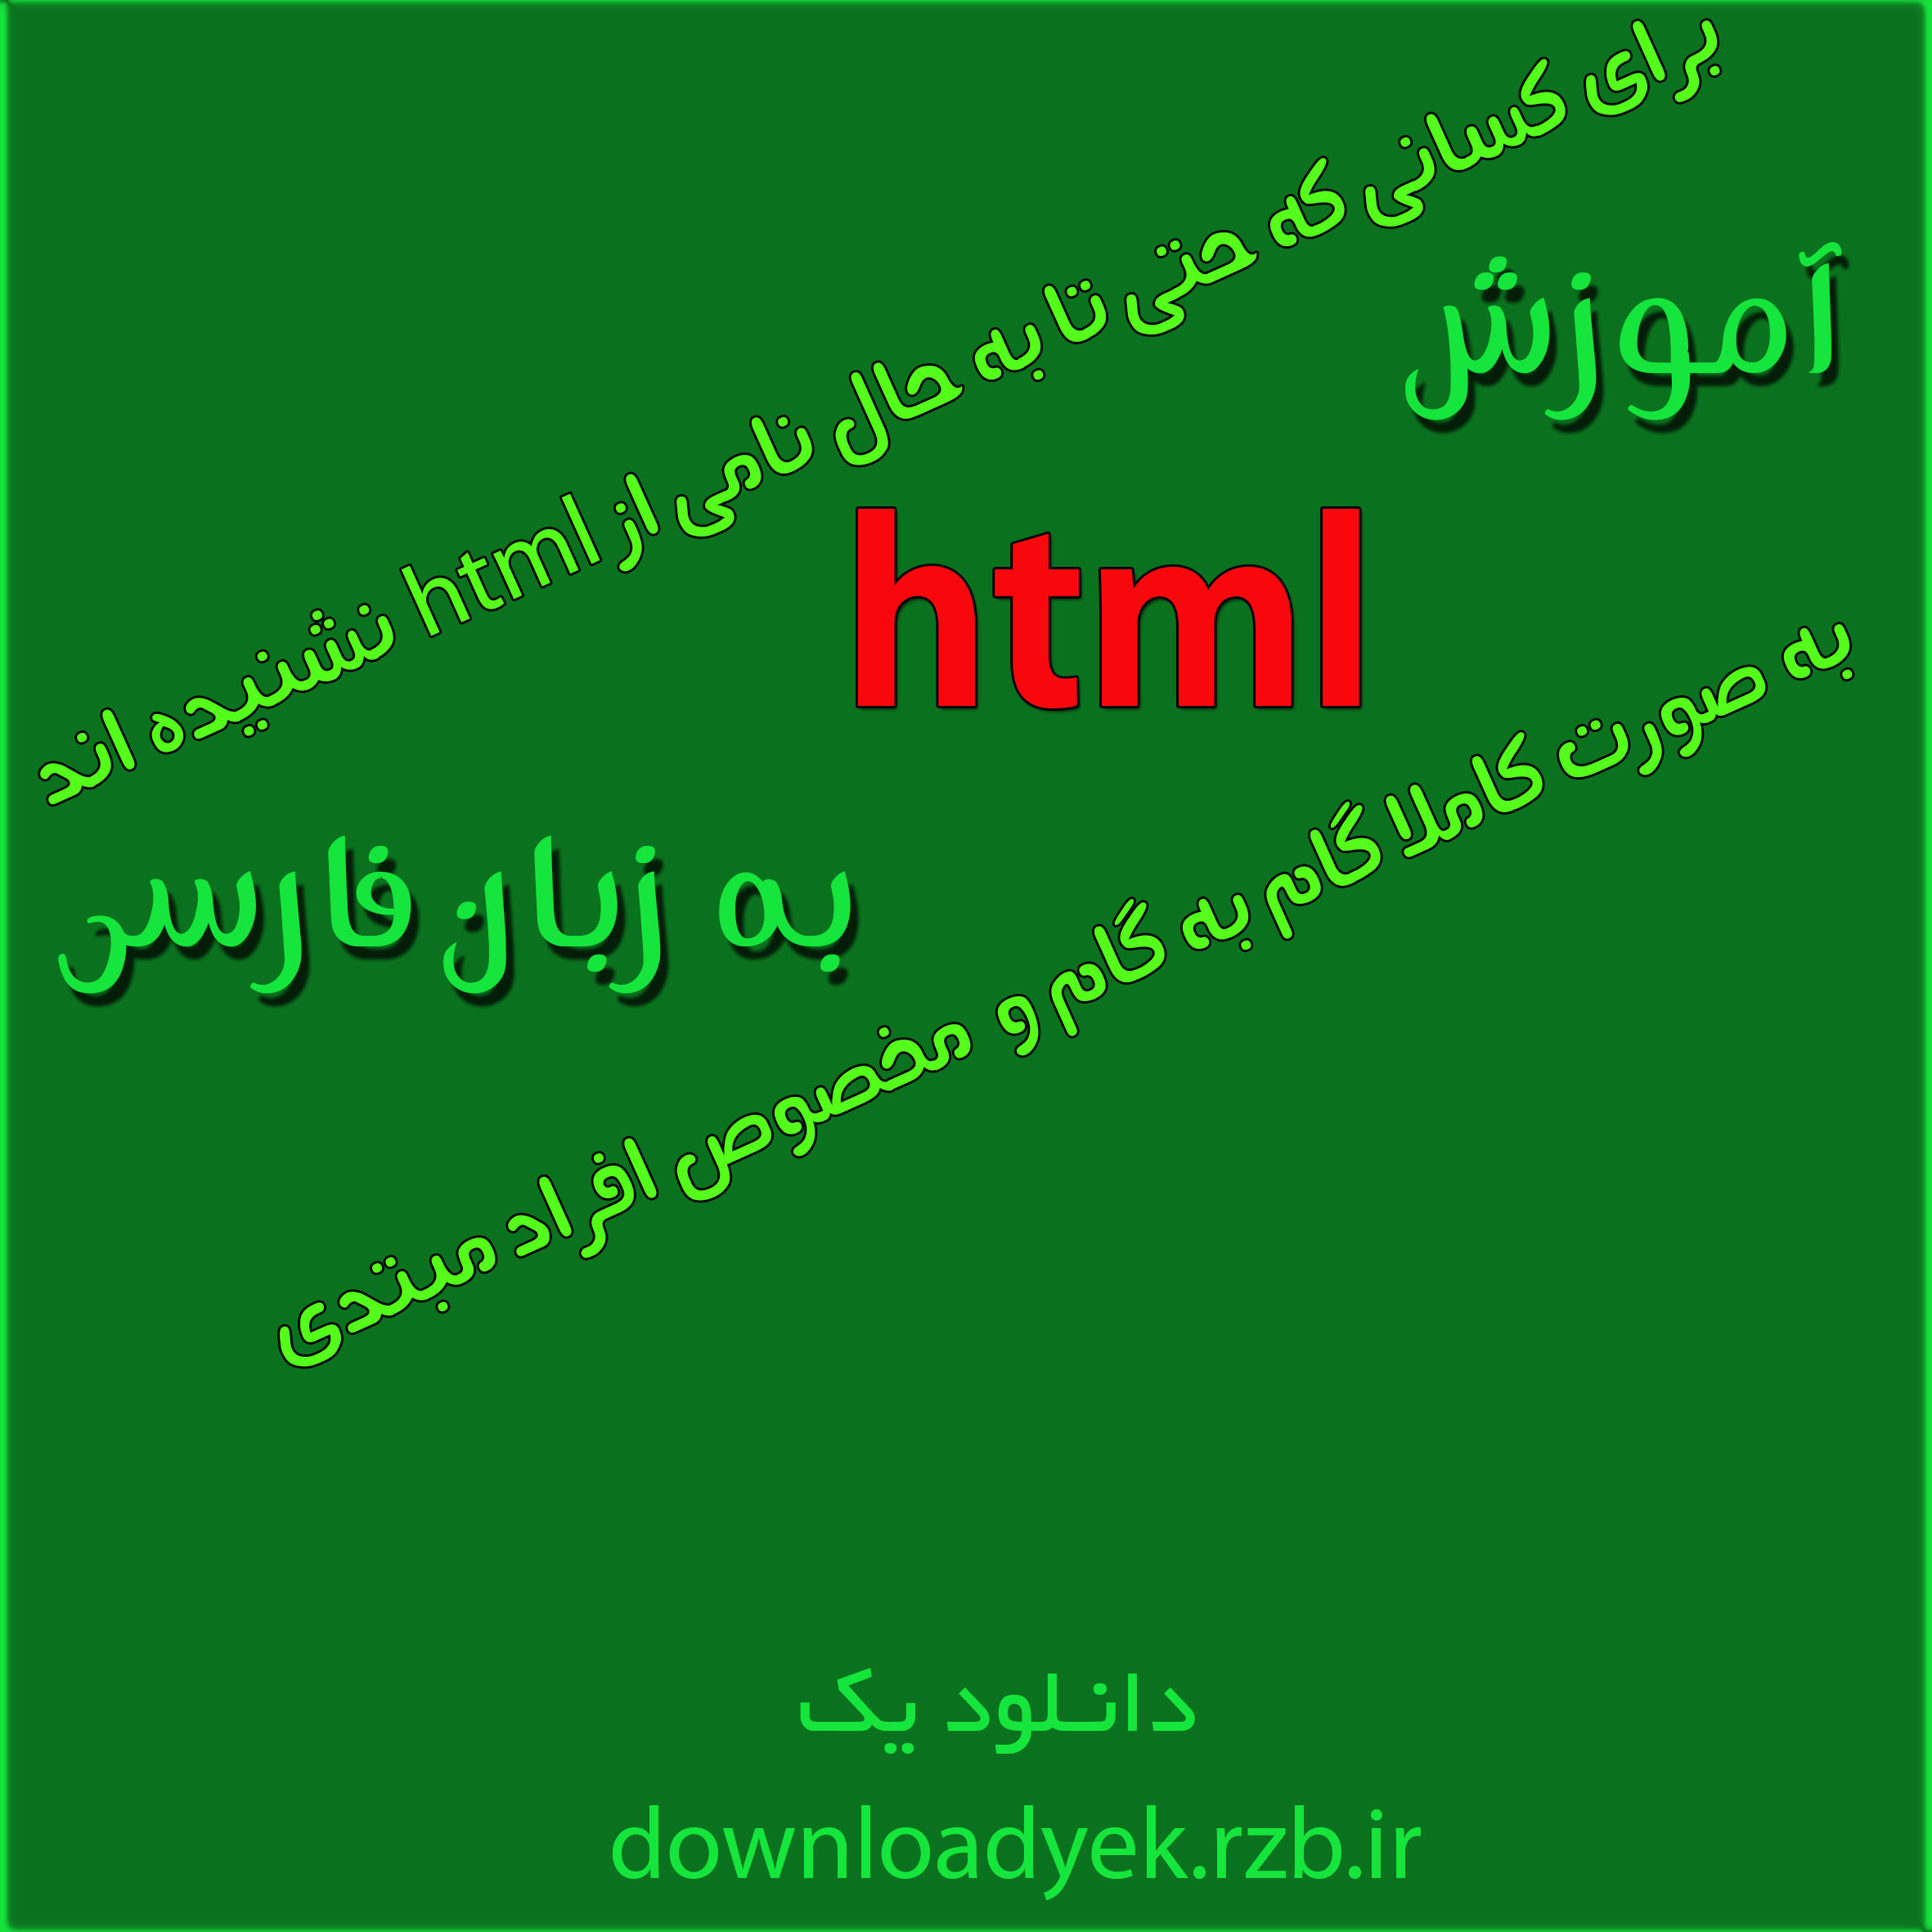 دانلود آموزش تصویری و کامل html به زبان فارسی